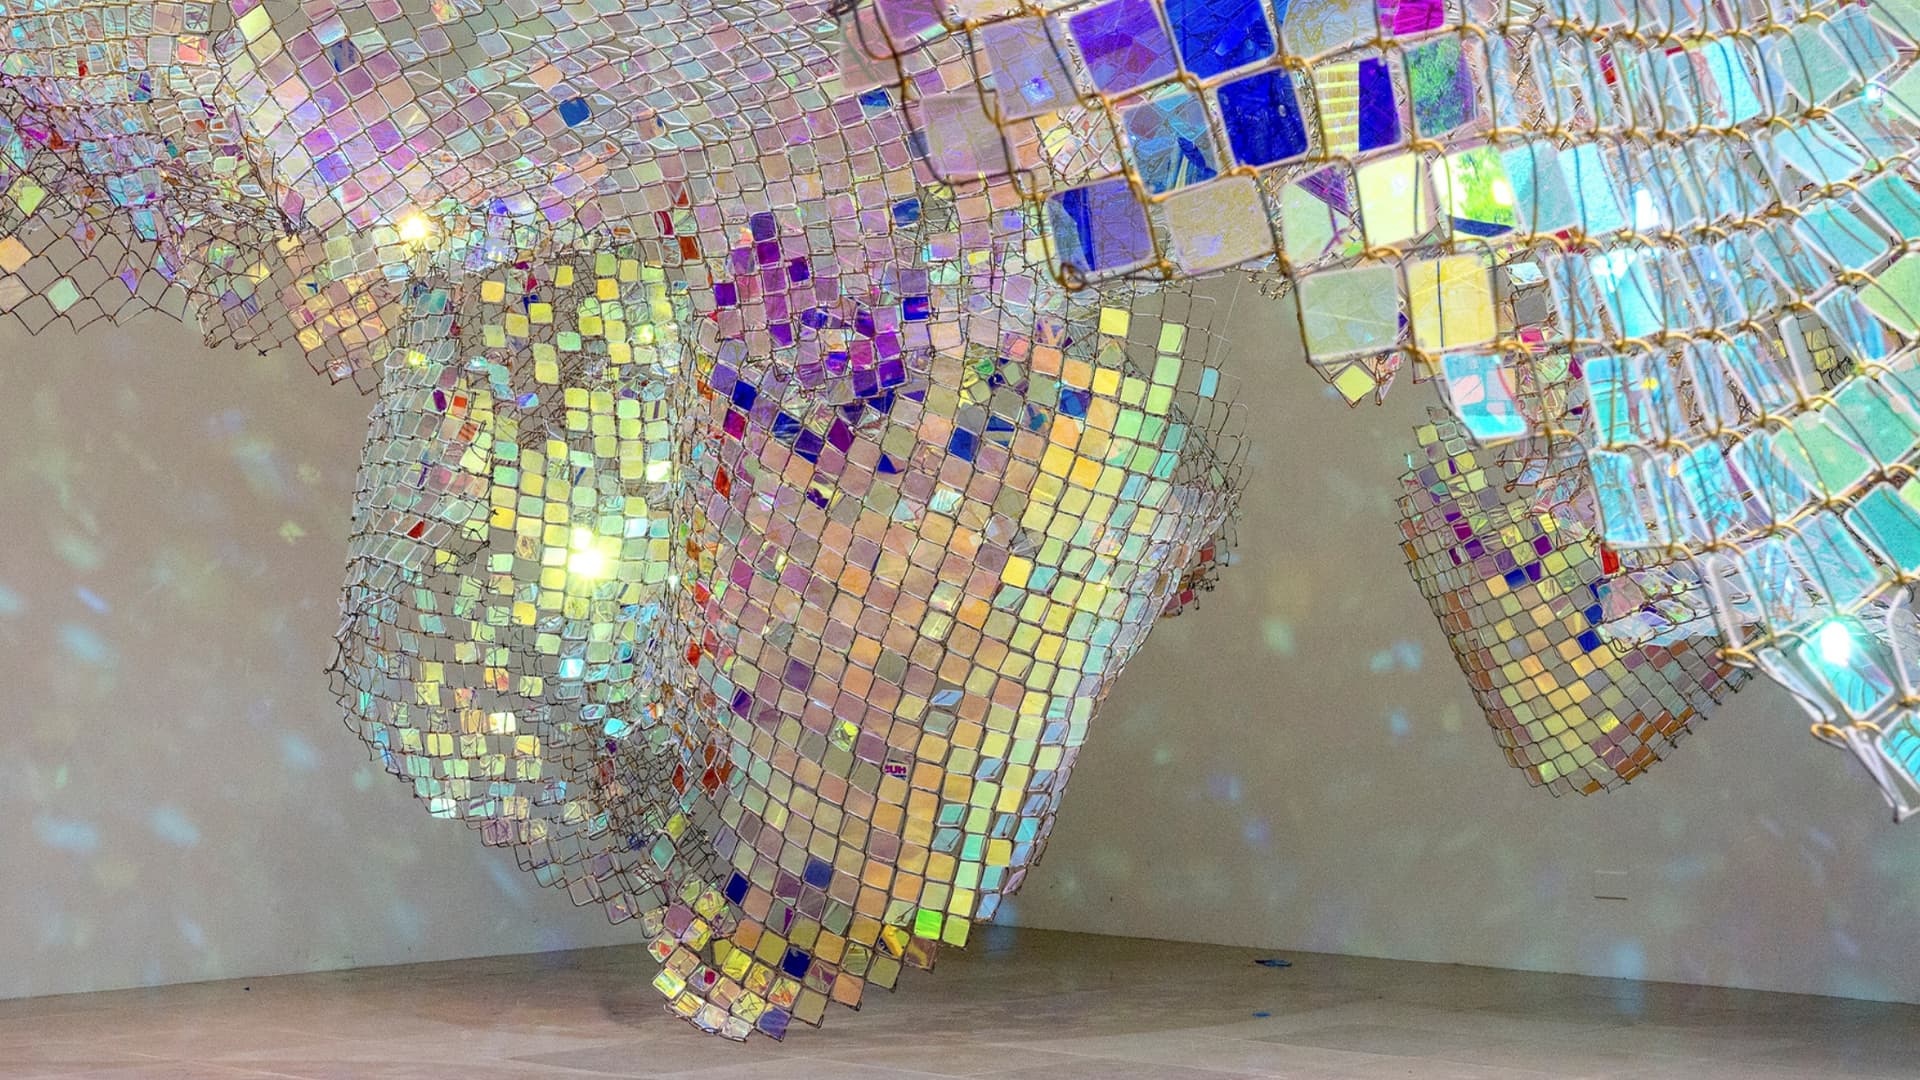 Нестандартные свойства света в инсталляциях Су Санни Парк